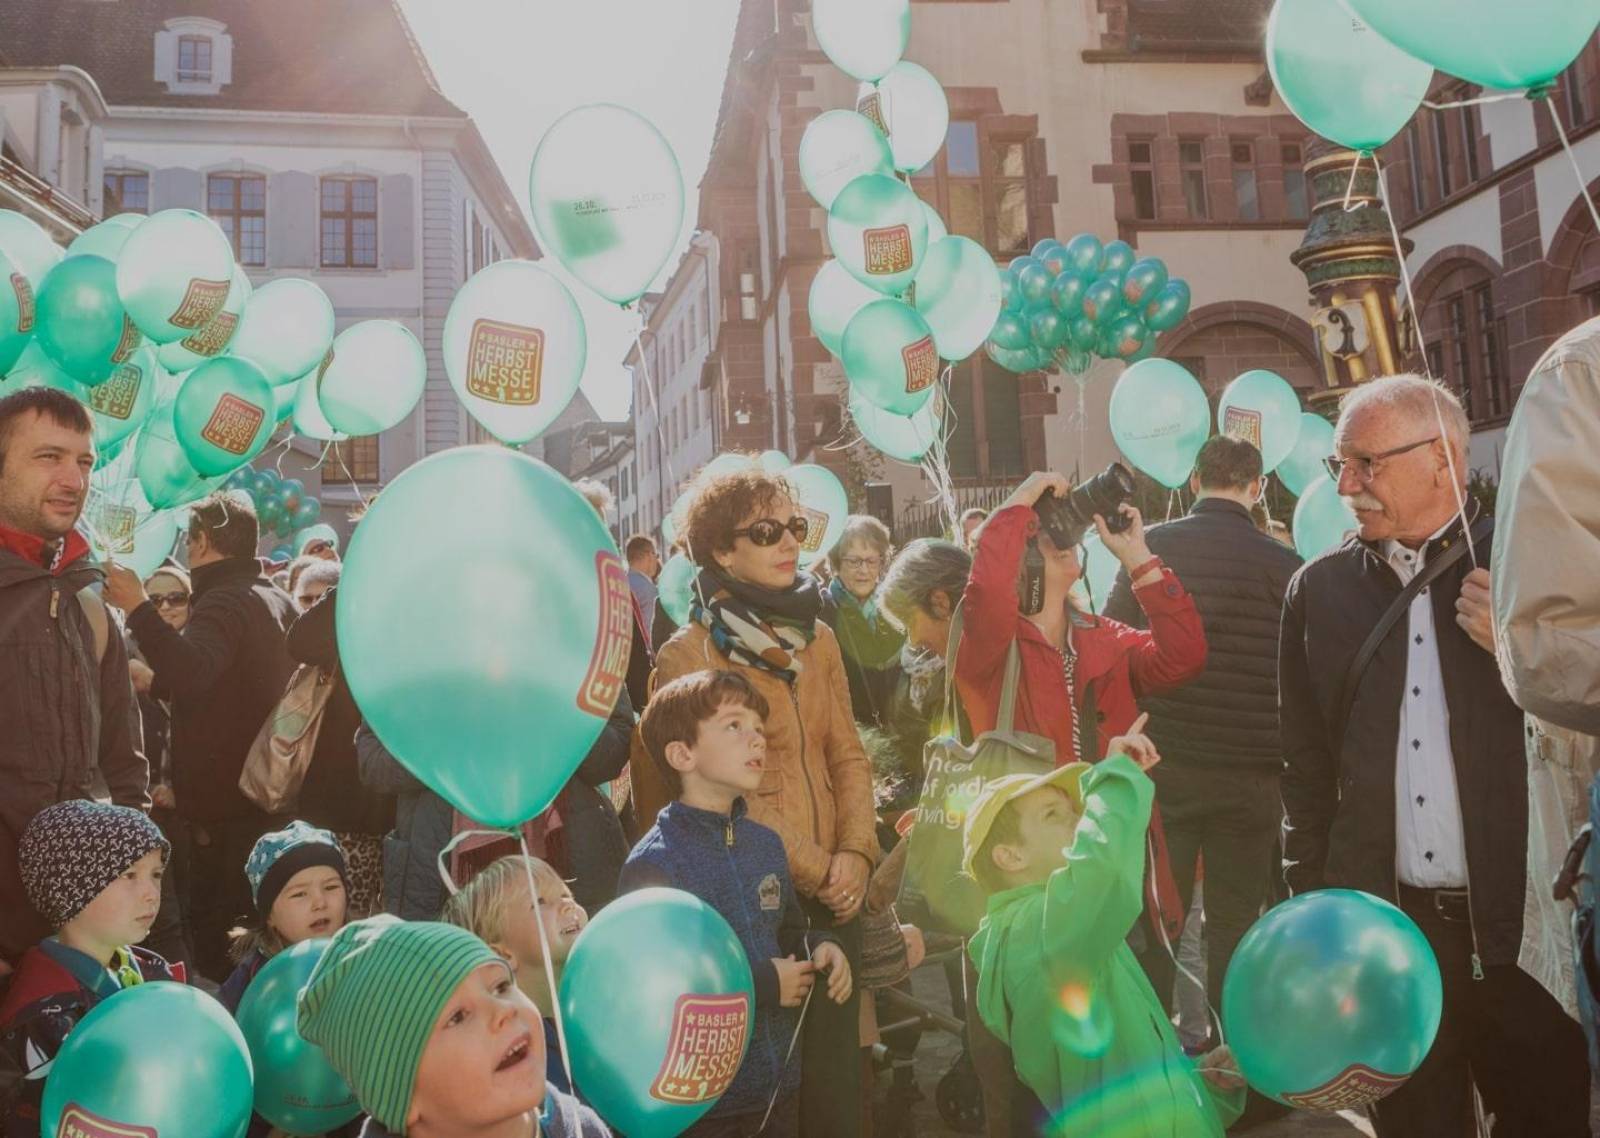 Enfants et adultes regardant la cloche de la foire en train de sonner dans la Martinturm et portant dans leurs mains des ballons turquoise avec le logo rose de la foire d'automne.